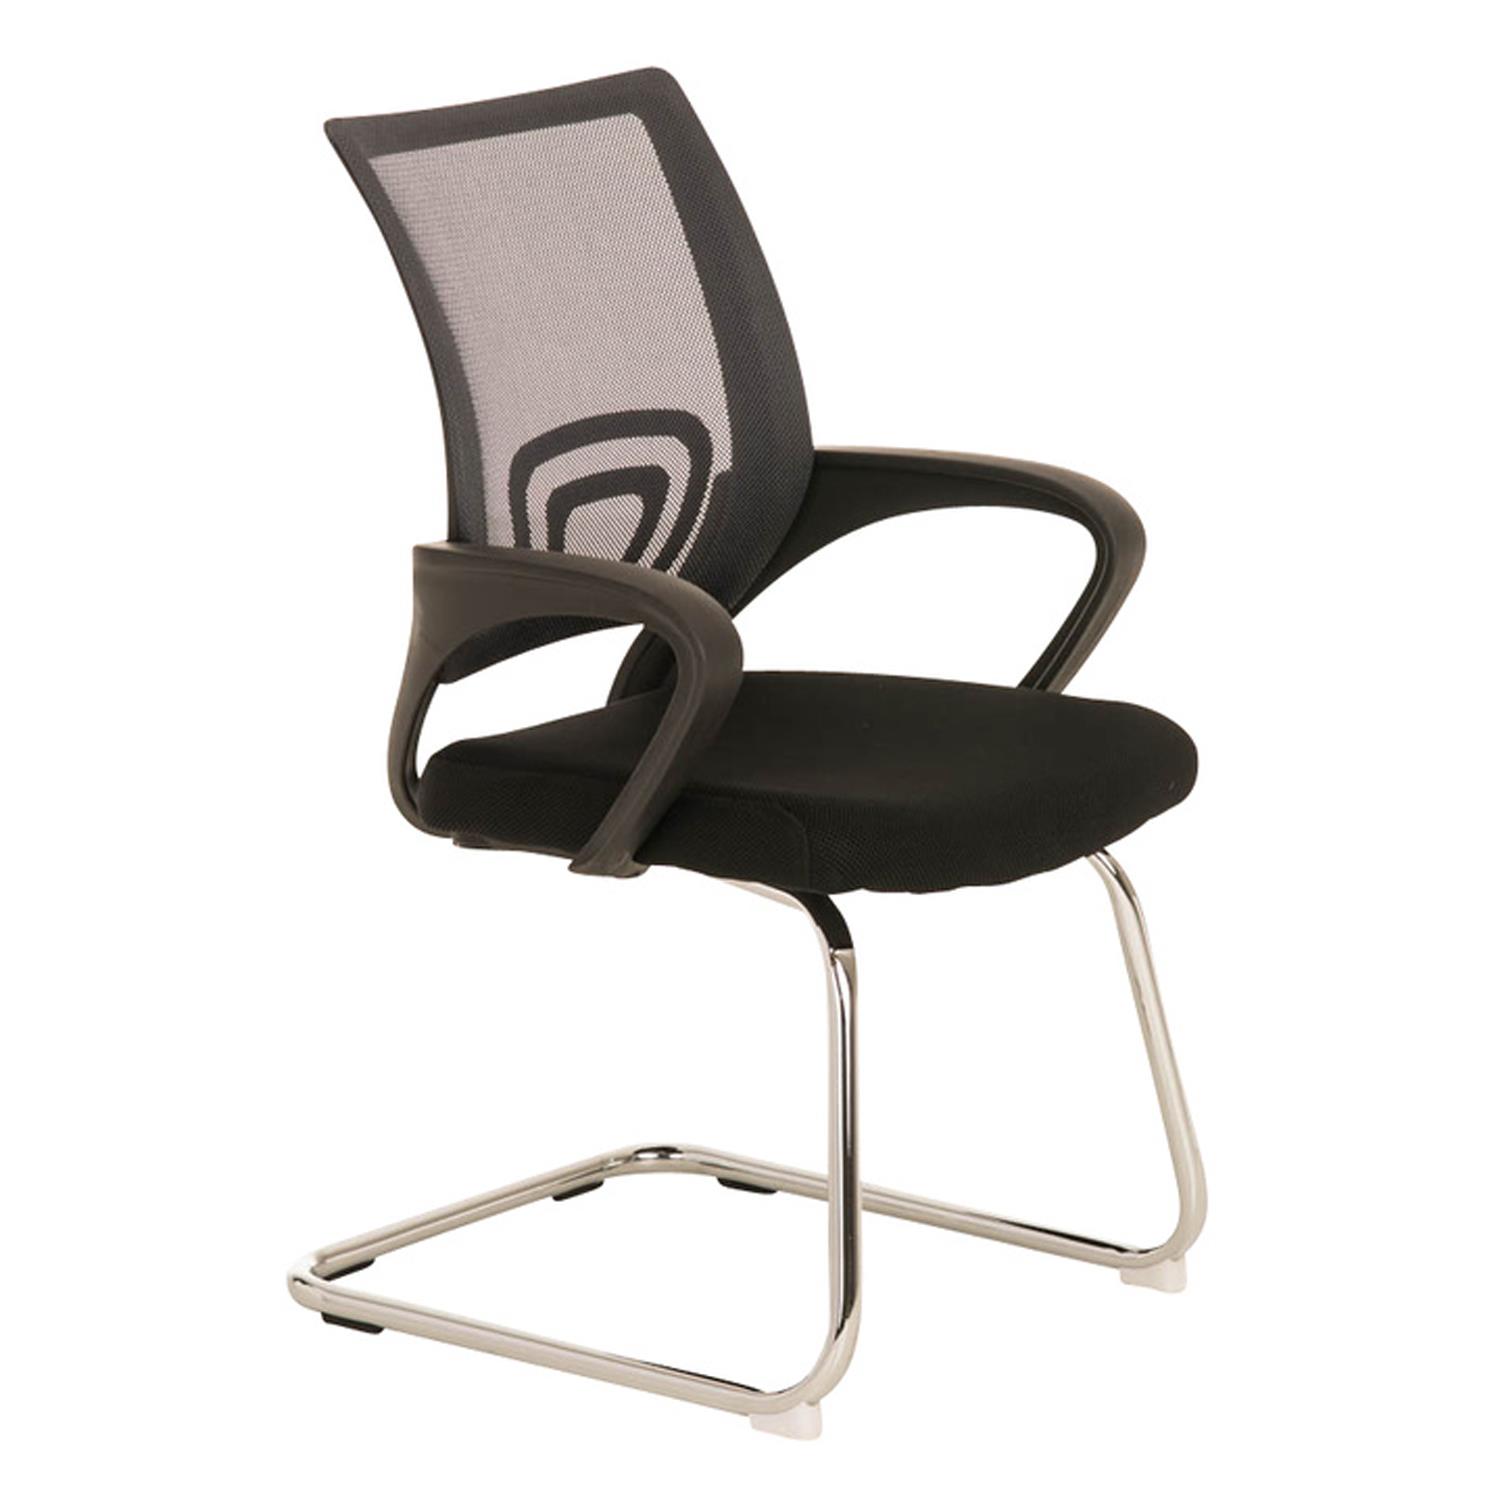 Konferenzstuhl SEOUL V, schönes Design, große gepolsterte Sitzfläche, Farbe Grau